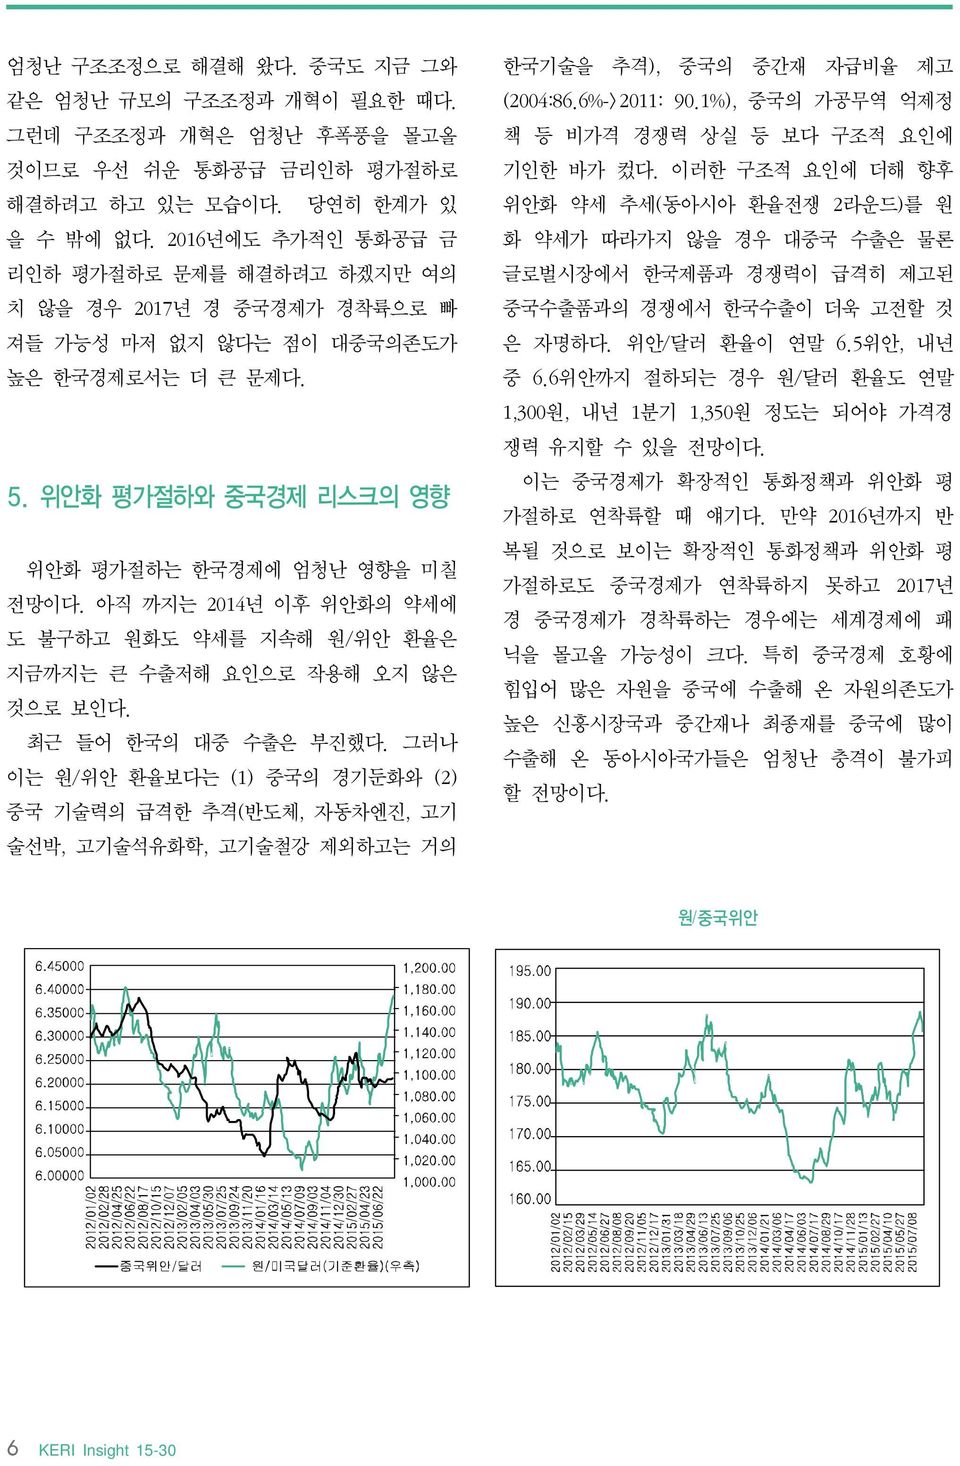 아직 까지는 2014년 이후 위안화의 약세에 도 불구하고 원화도 약세를 지속해 원/위안 환율은 지금까지는 큰 수출저해 요인으로 작용해 오지 않은 것으로 보인다. 최근 들어 한국의 대중 수출은 부진했다.